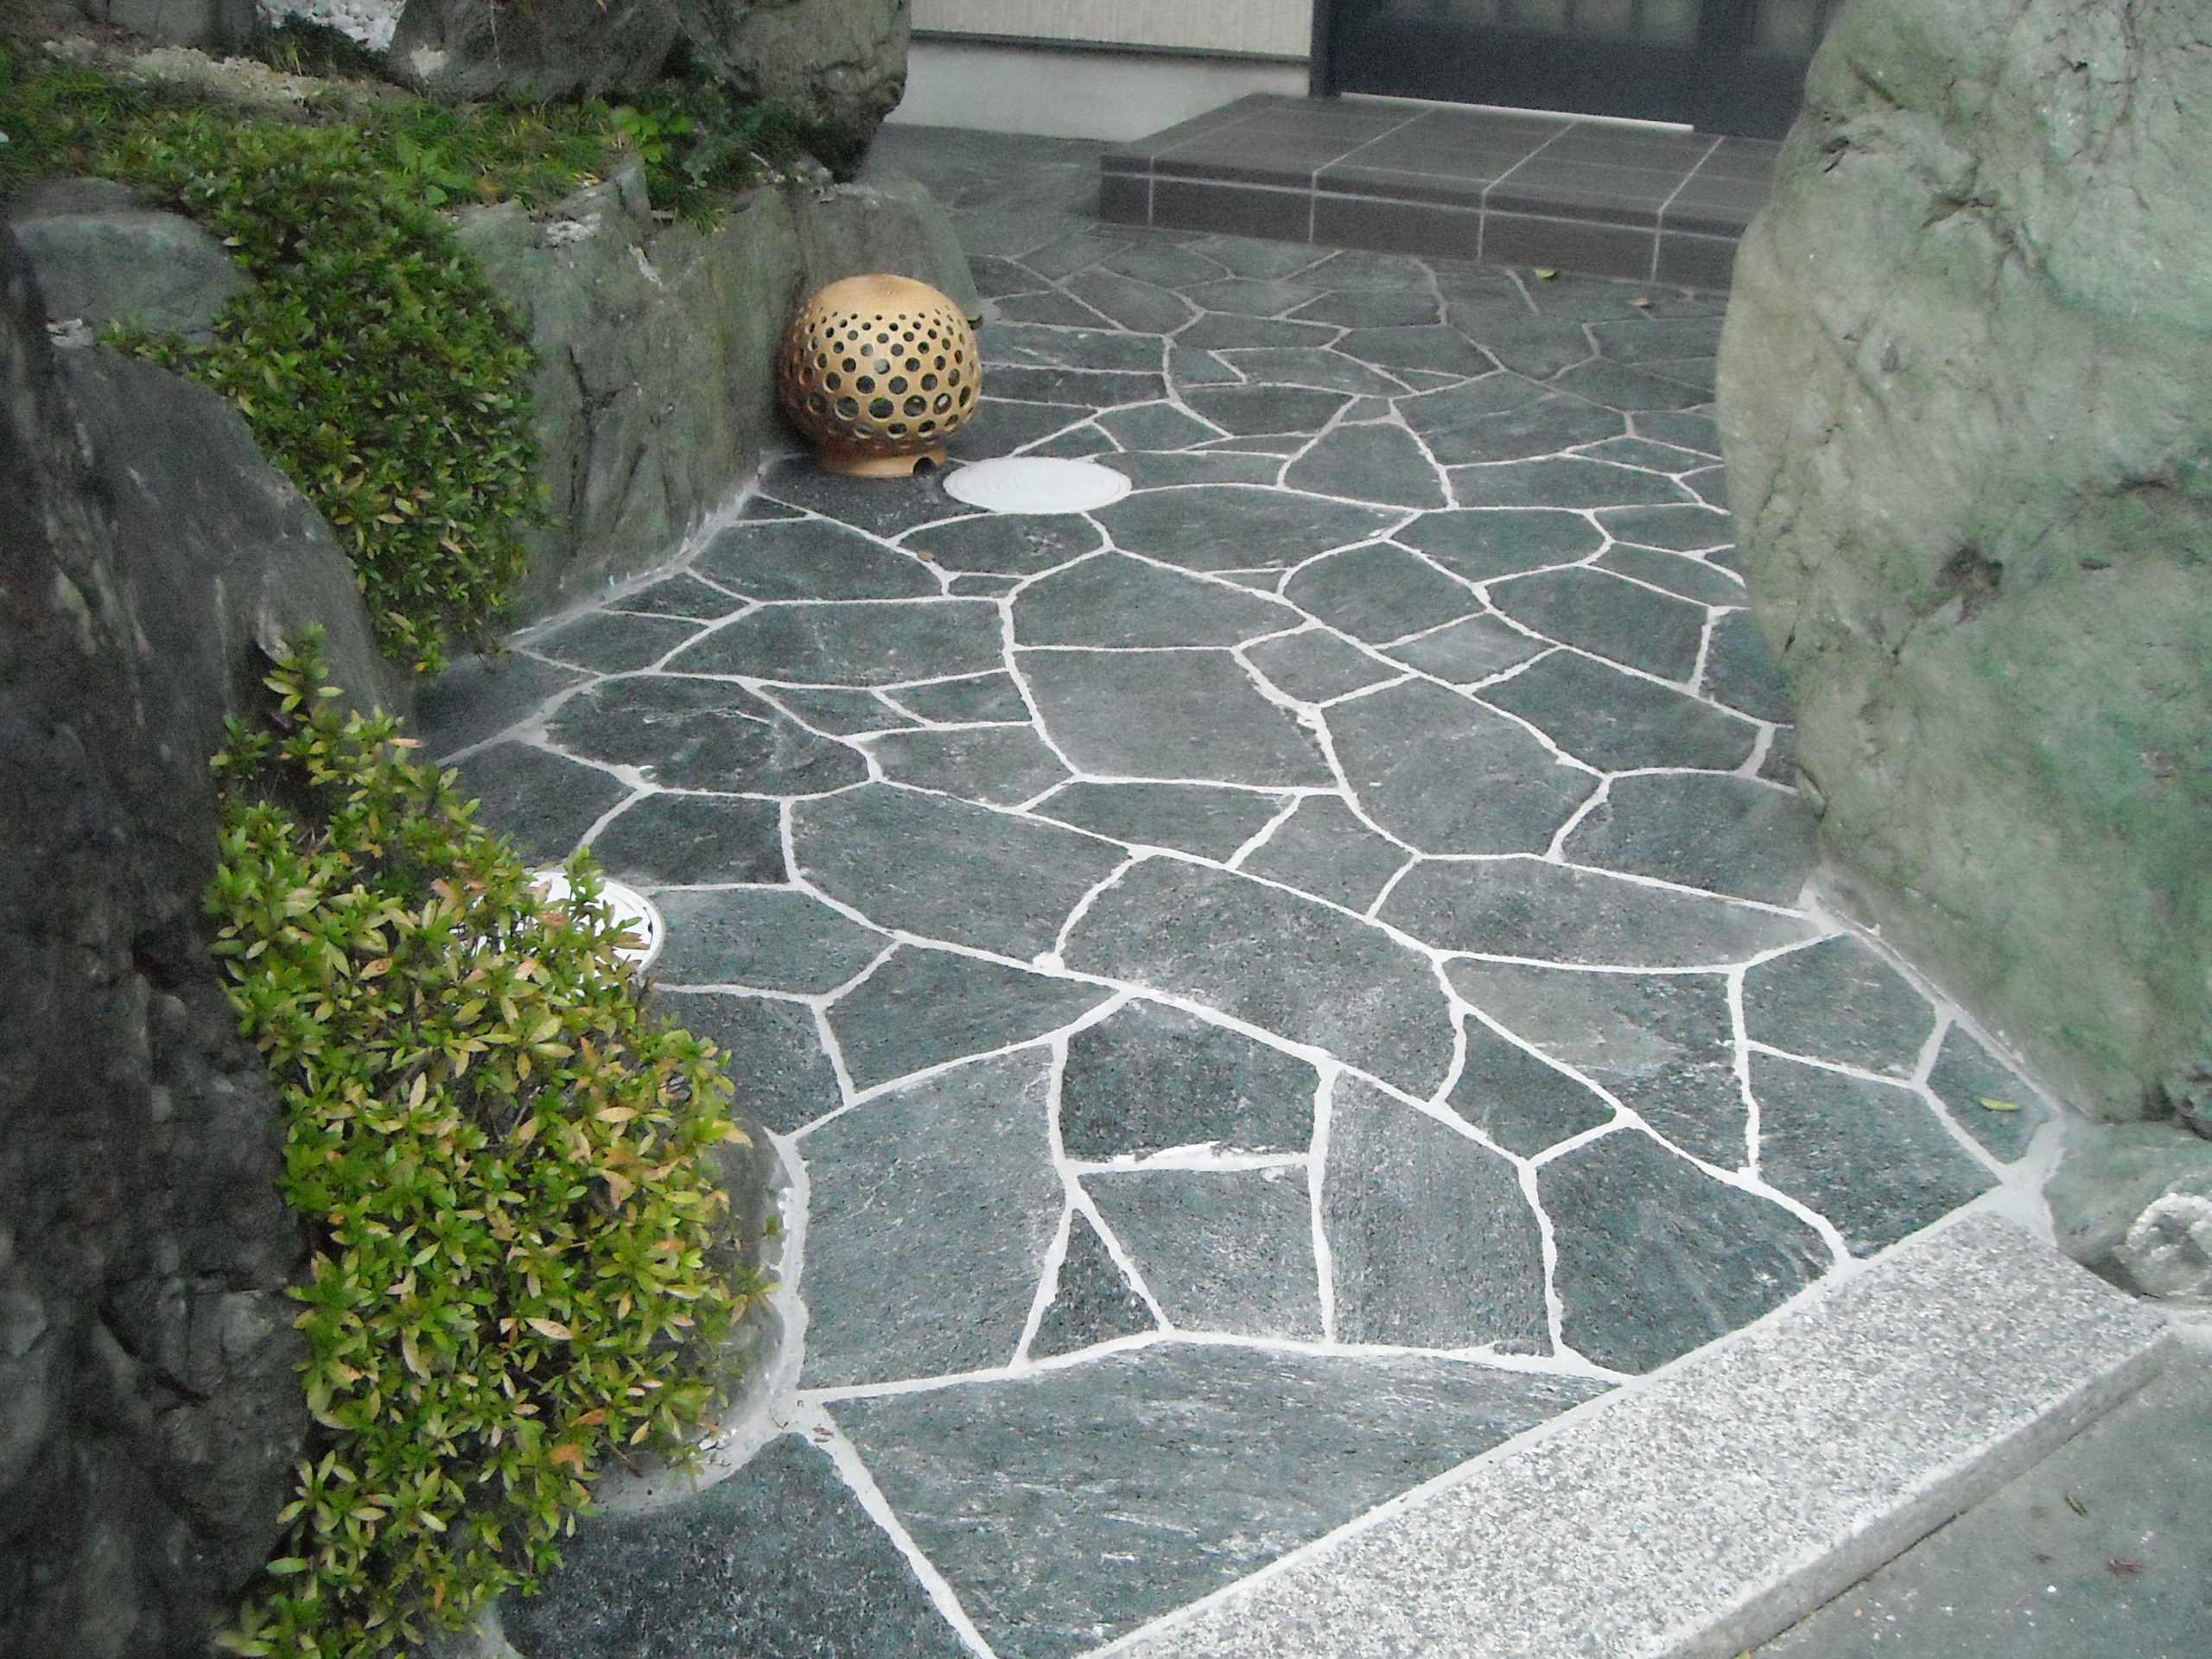 石張りで歩きやすくお手入れも楽に 東近江市 京阪グリーン 滋賀 京都 大阪のエクステリア ガーデン 外構工事